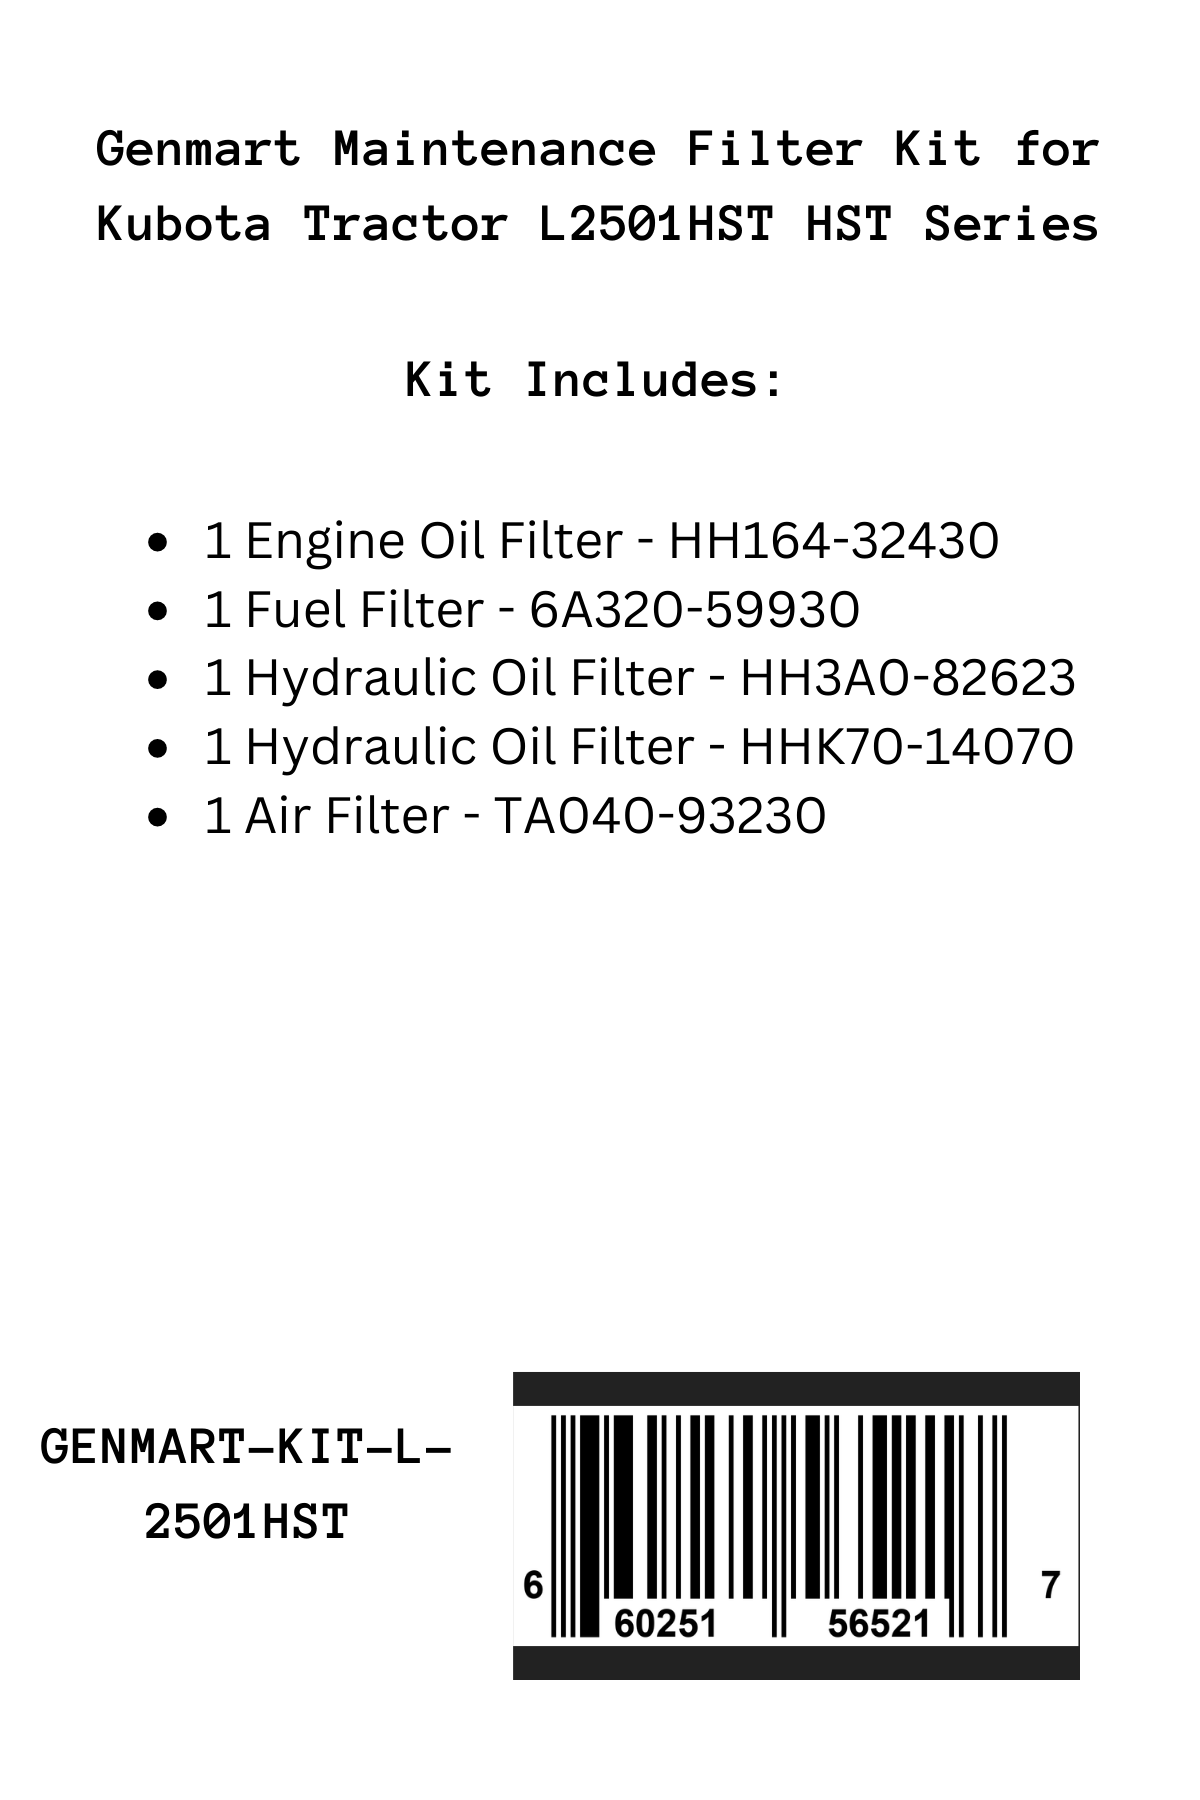 Genmart Maintenance Kit for Kubota Tractor L2501HST HST Series